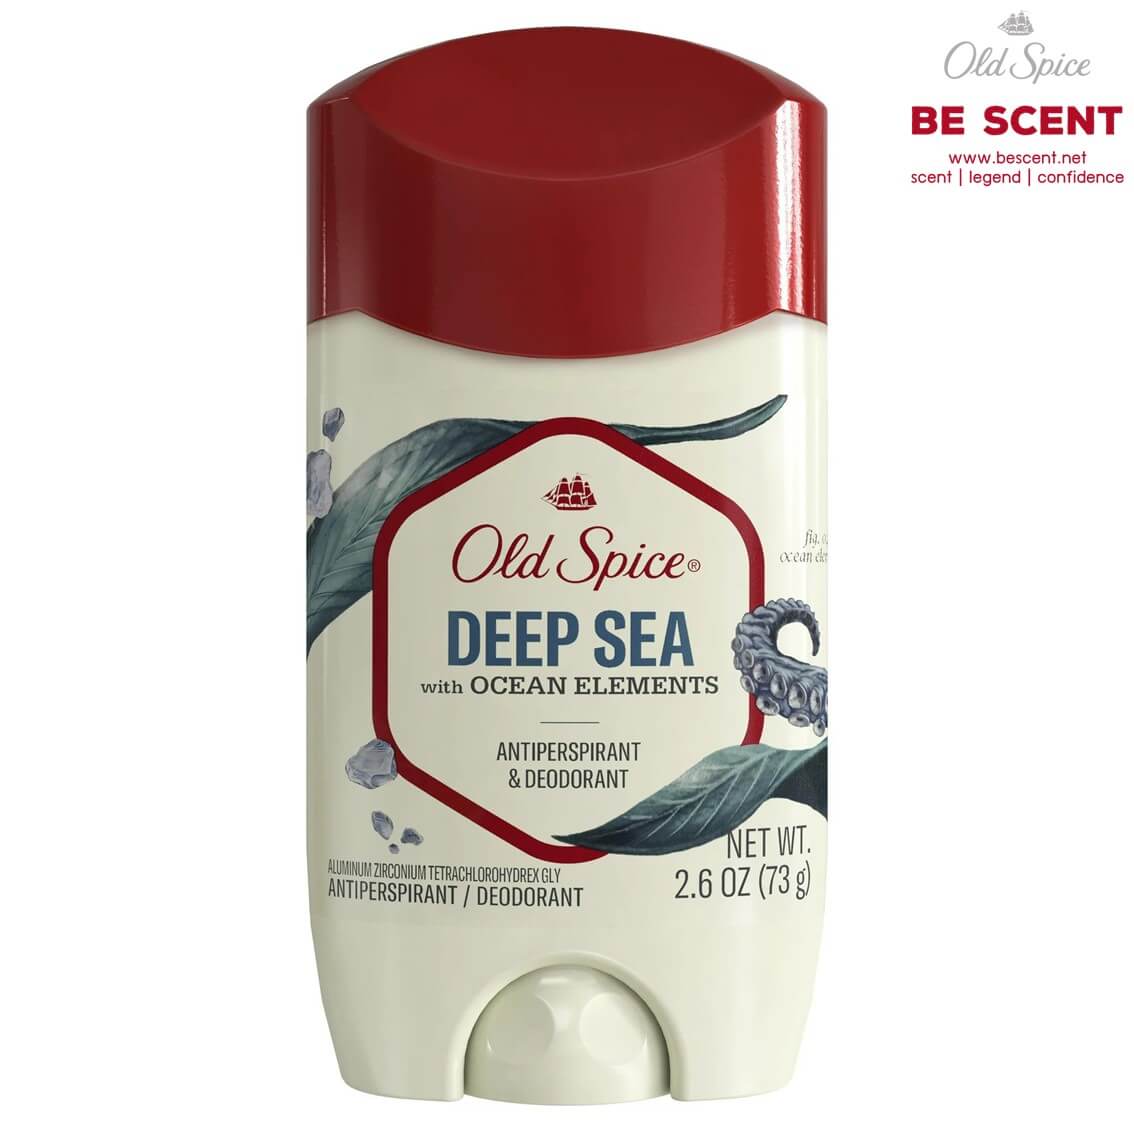 Old Spice กลิ่น Deep Sea สูตรเต่าเปียก โรลออนดับกลิ่นเต่า ขนาด 73 กรัม